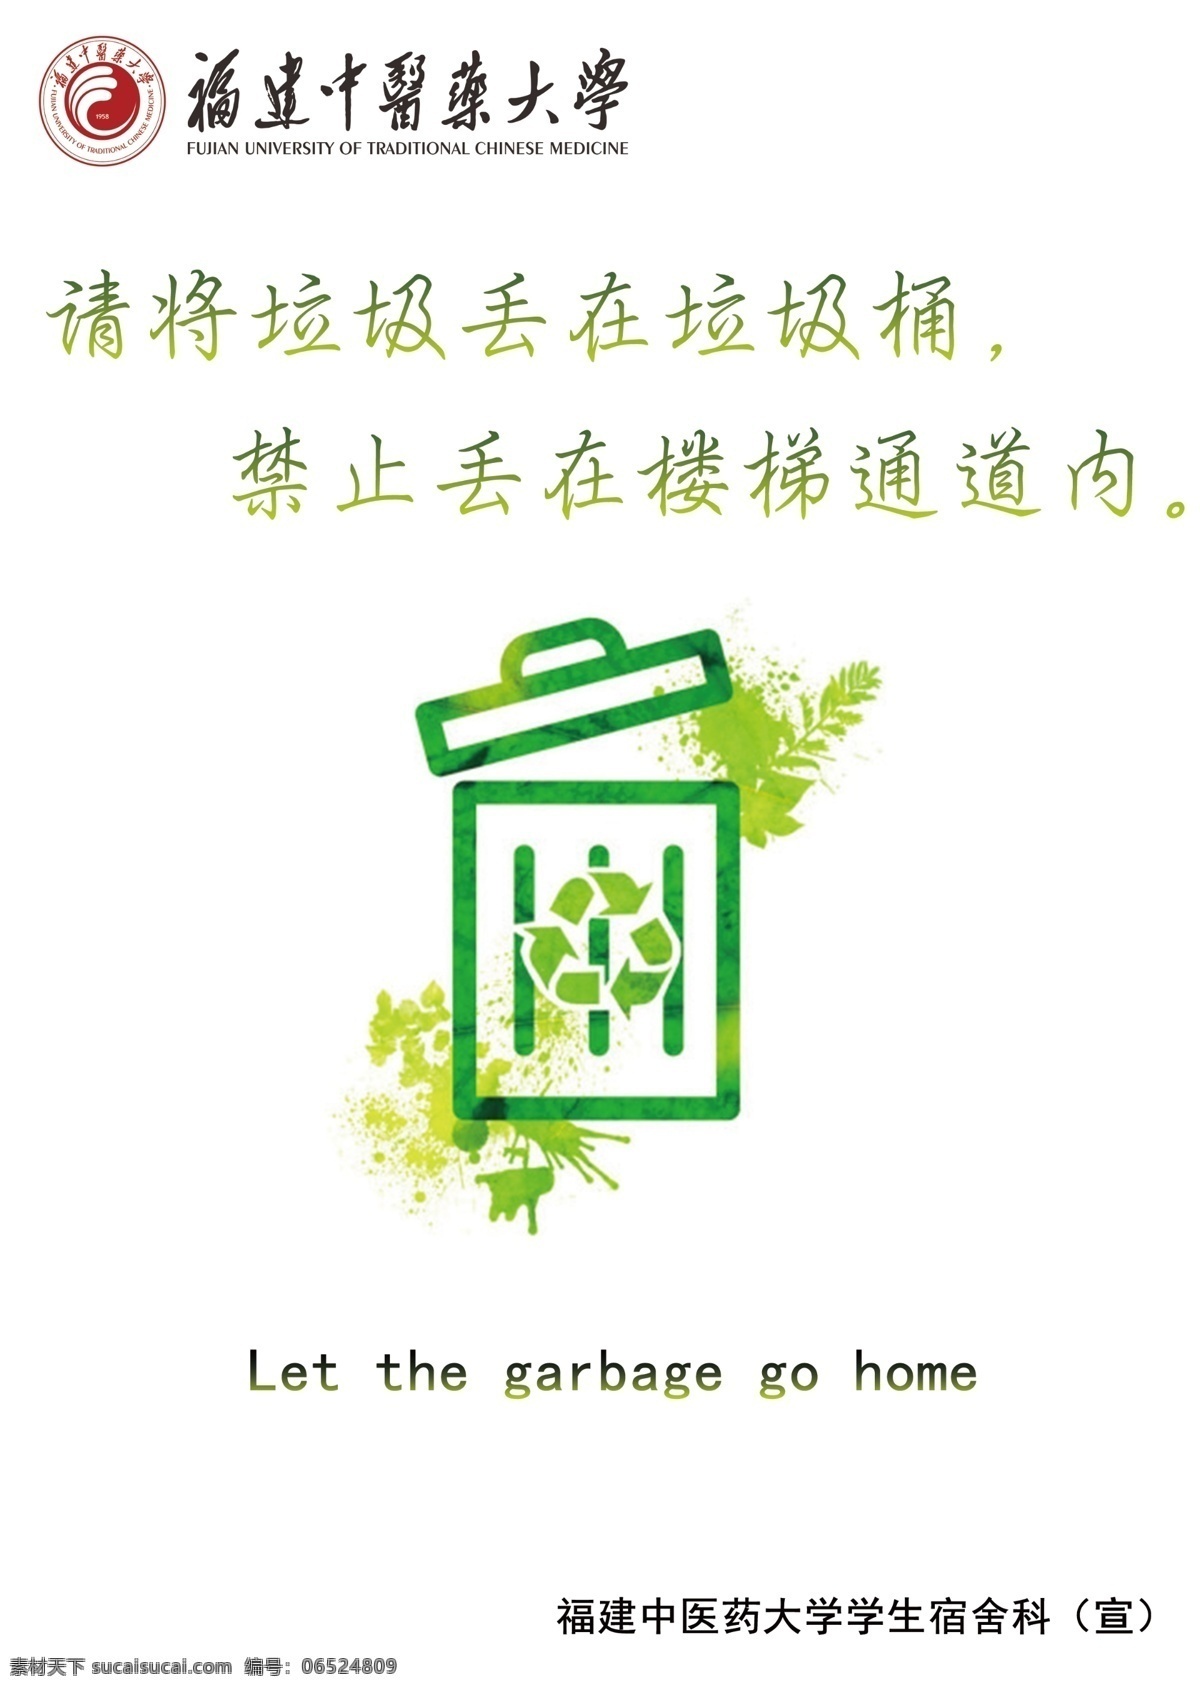 丢垃圾 垃圾桶 禁止乱扔垃圾 环保 绿色